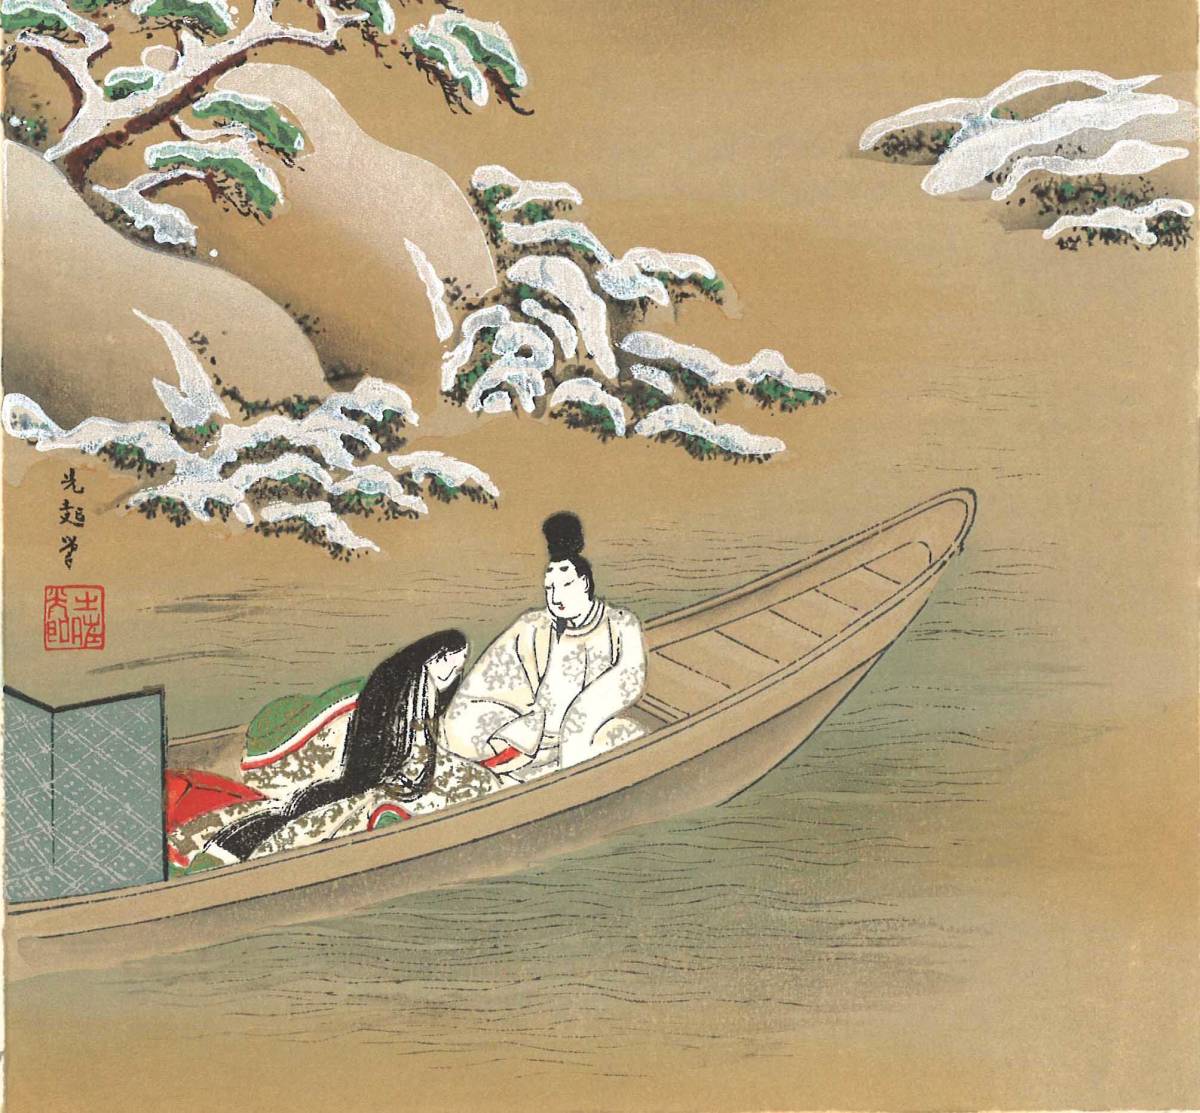 額装源氏物語土佐光起(Tosa Mitsuoki) (1617～1691) 木版画源氏物語 